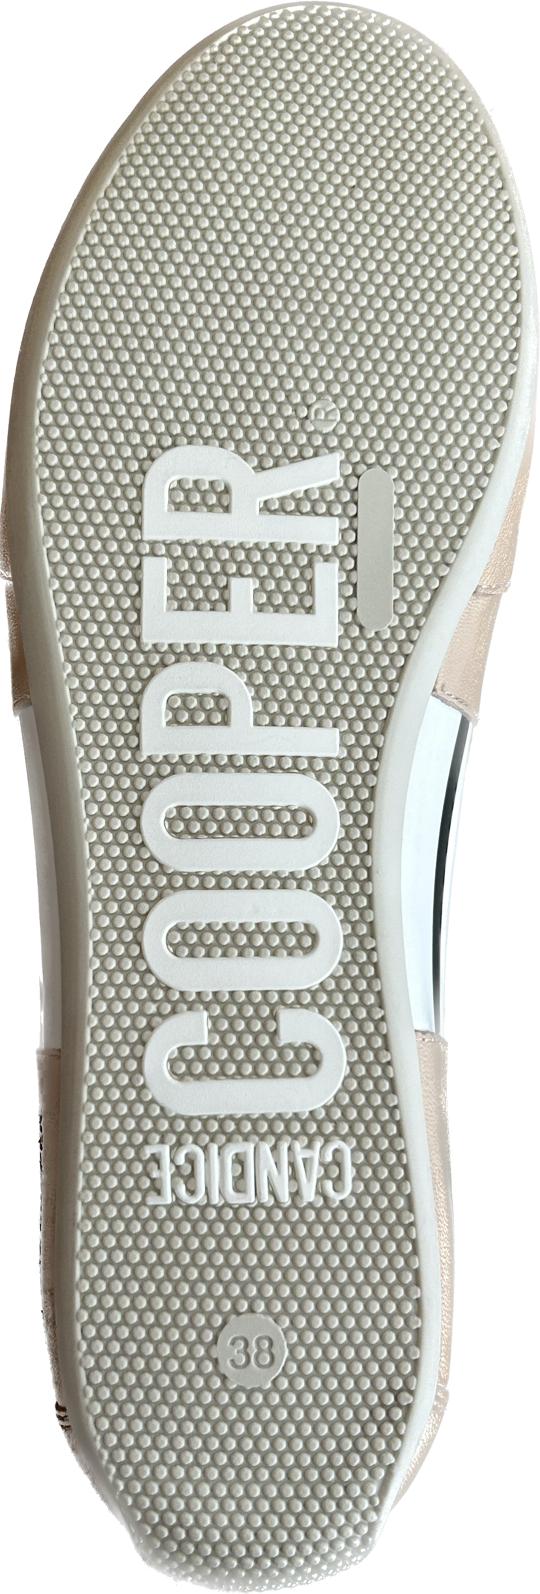 Candice Cooper Sneaker ROCK PATCH blk/beige